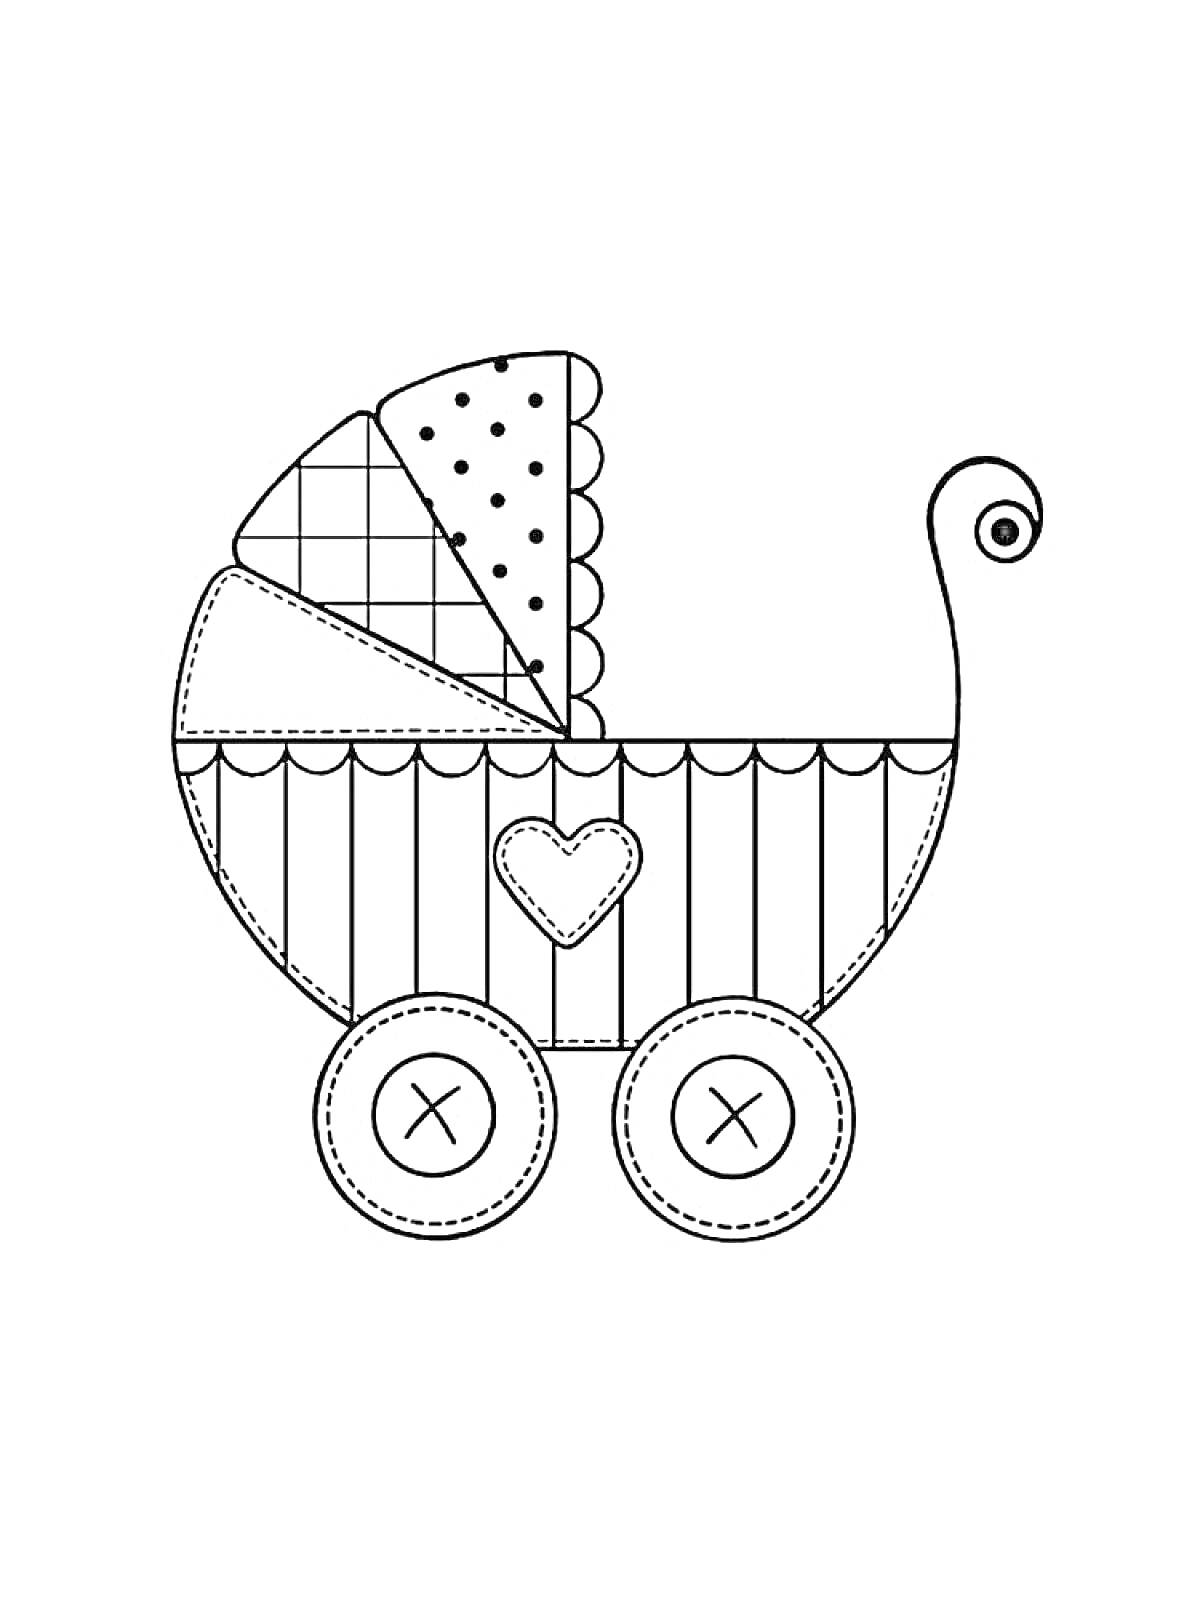 Коляска с ручкой, верхним навесом, декоративными швами на колесах и сердечком на корпусе